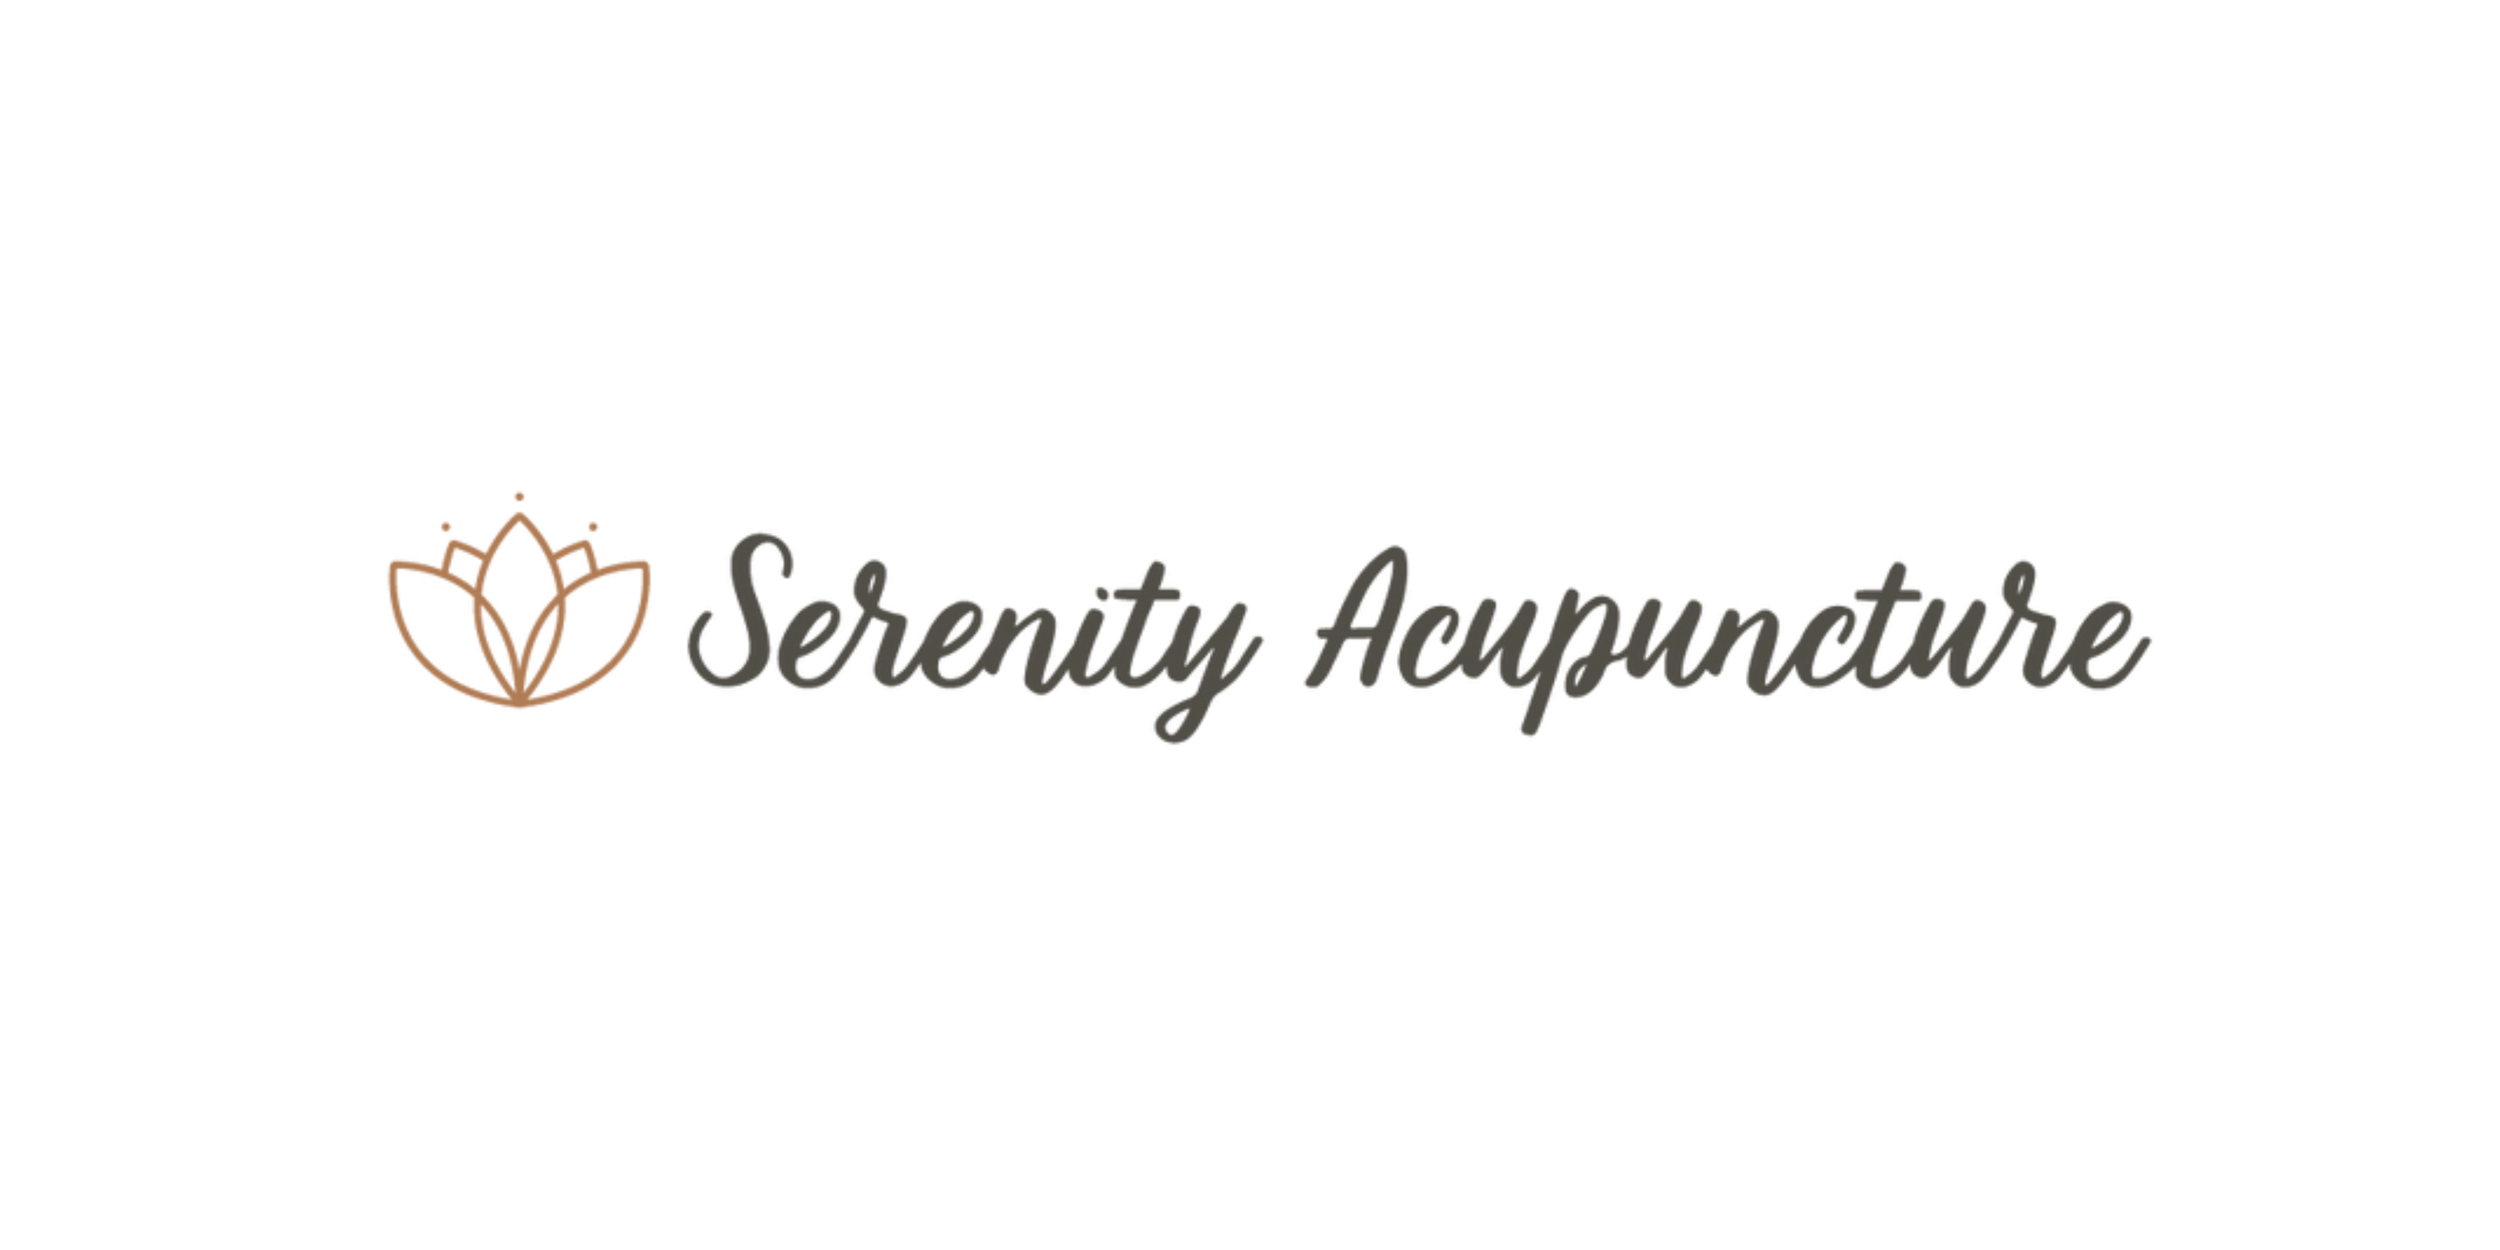 Serenity Acupuncture (Copy) (Copy) (Copy) (Copy) (Copy) (Copy)